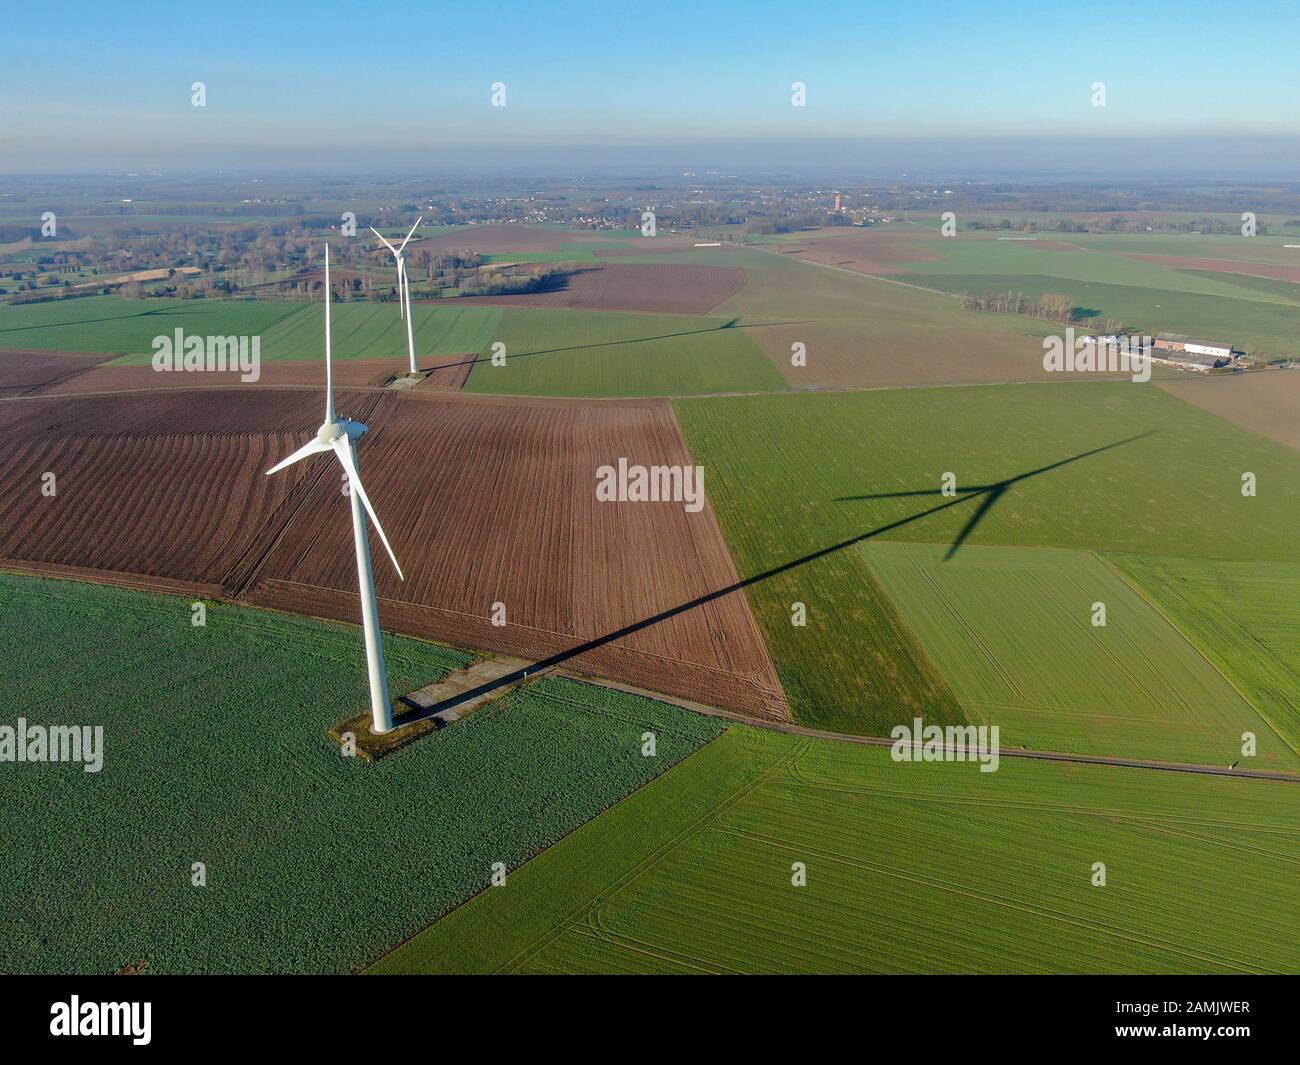 Vista aérea de los aerogeneradores en campos agrícolas durante el día azul de invierno. Producción de energía con energía limpia y renovable. Foto de stock